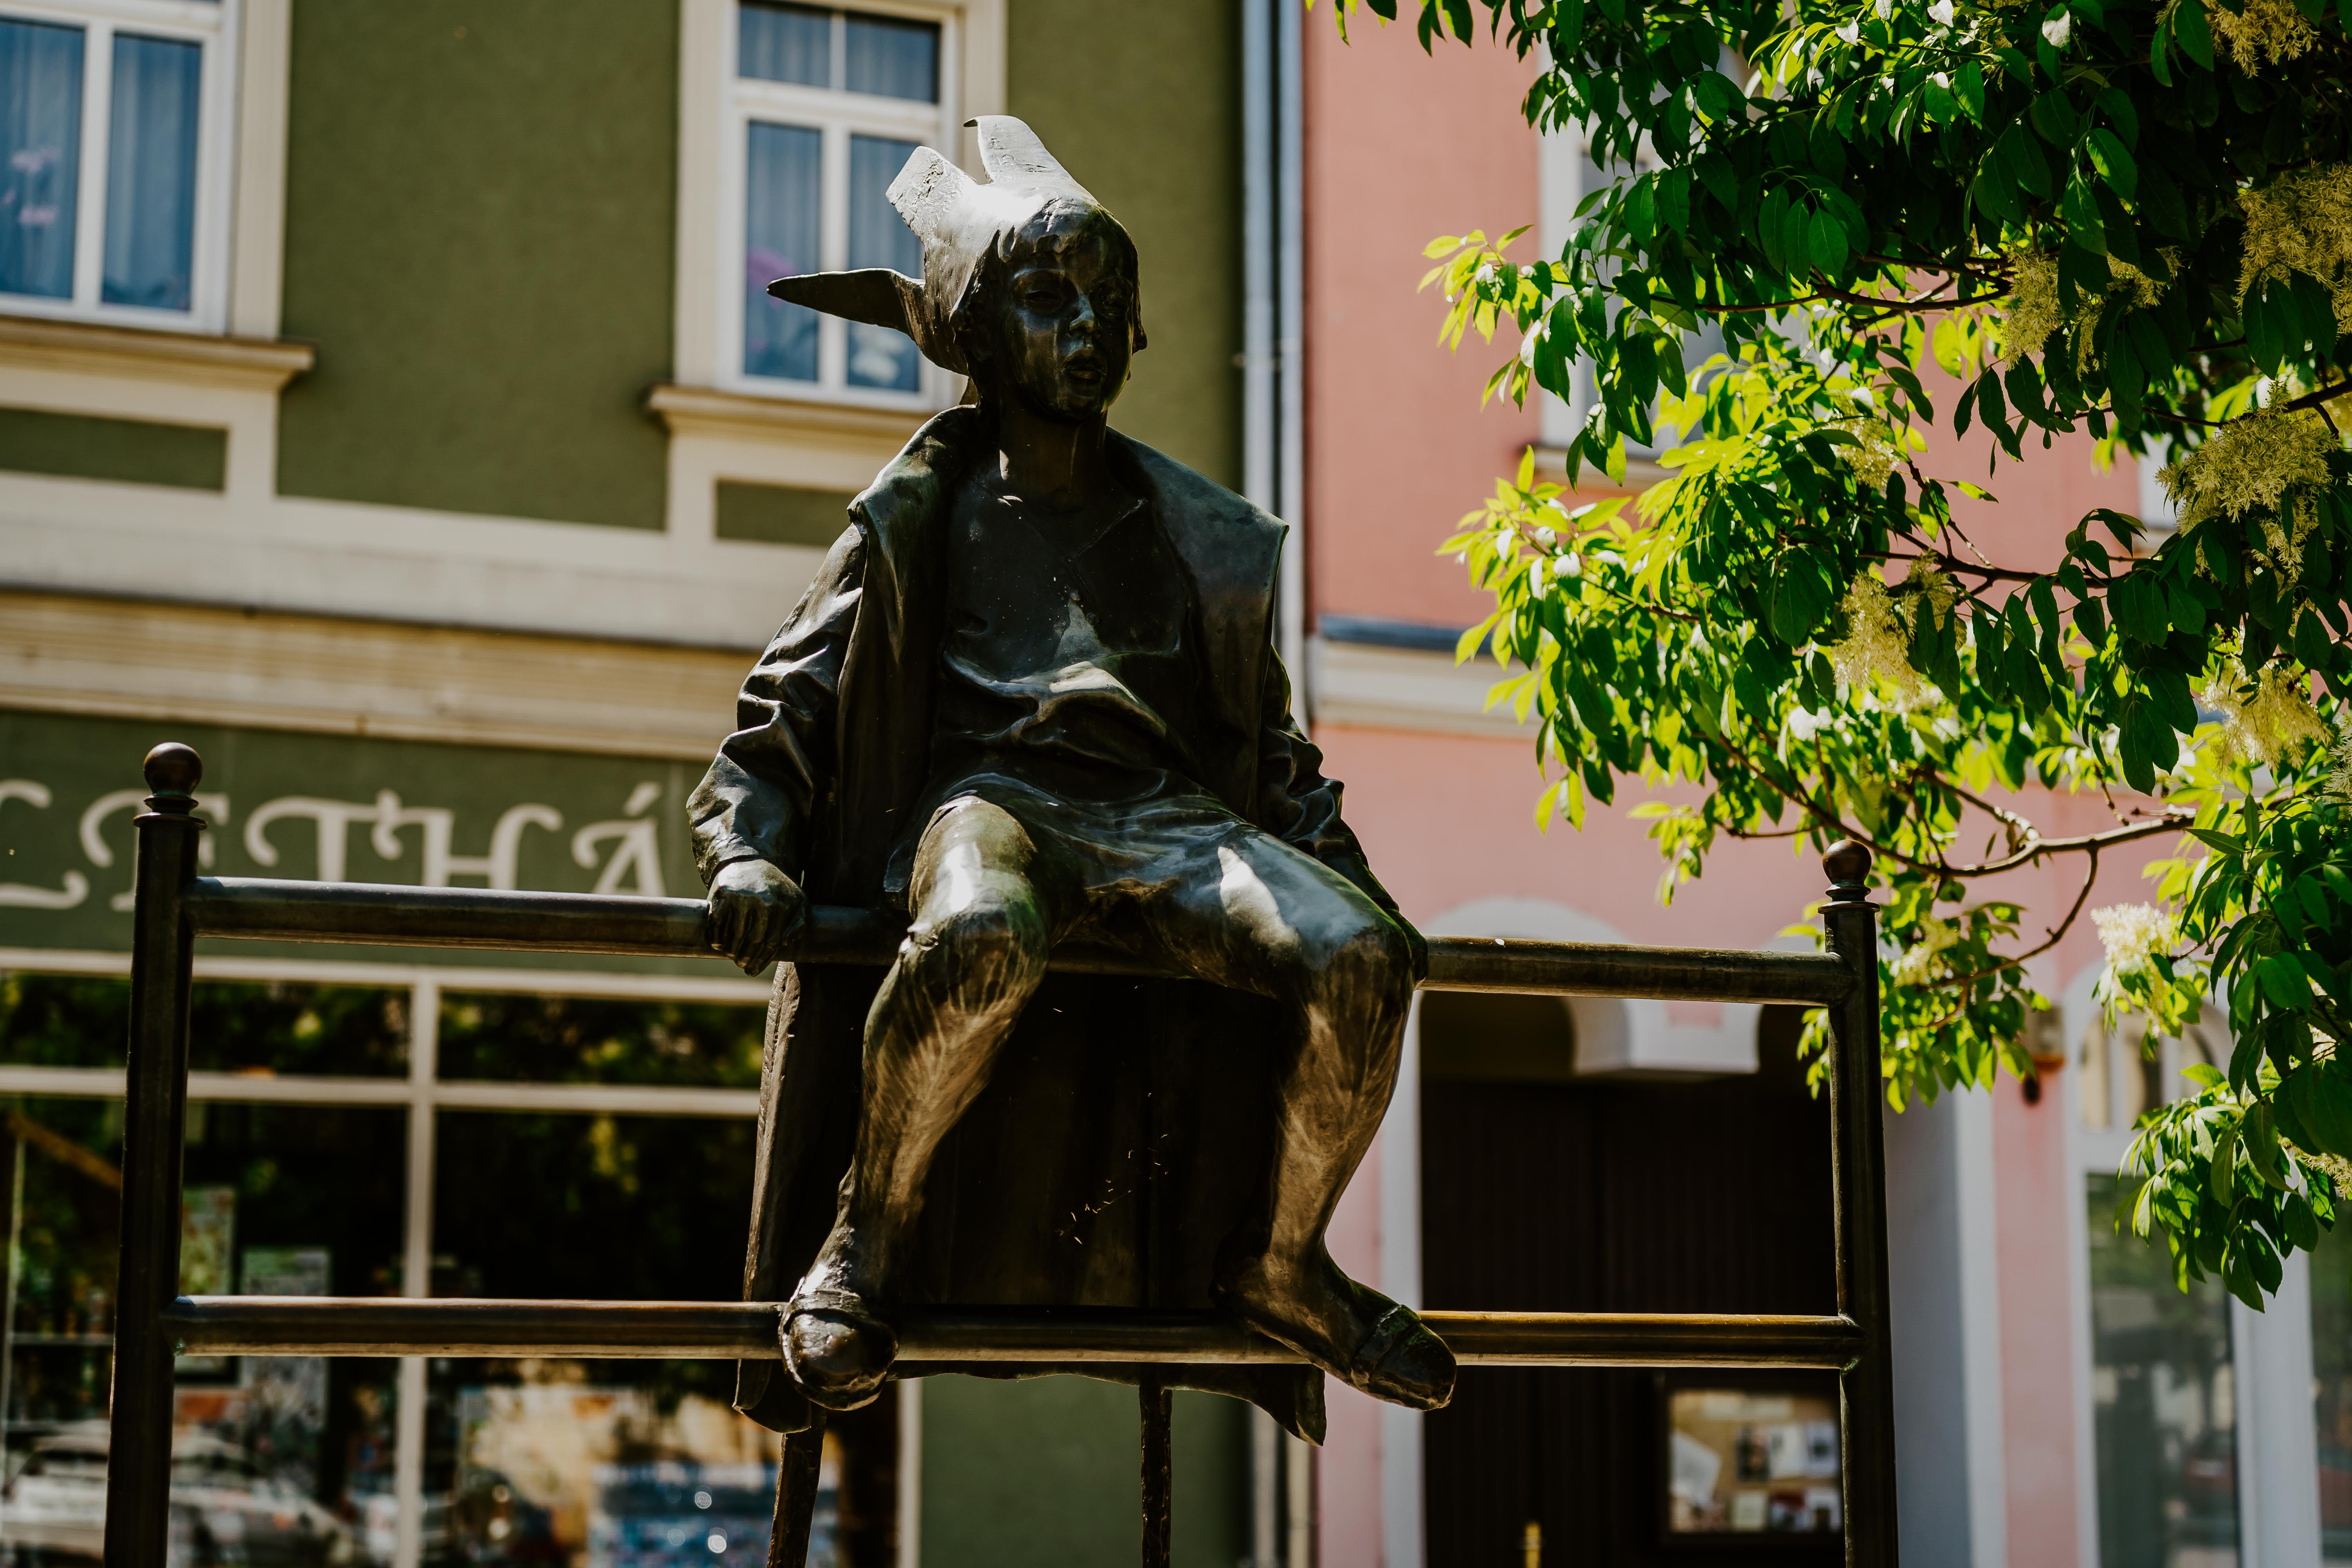 Mit keres Budapest híres szobra a Balatonnál? – Megnéztük Marton László szobrait Tapolcán